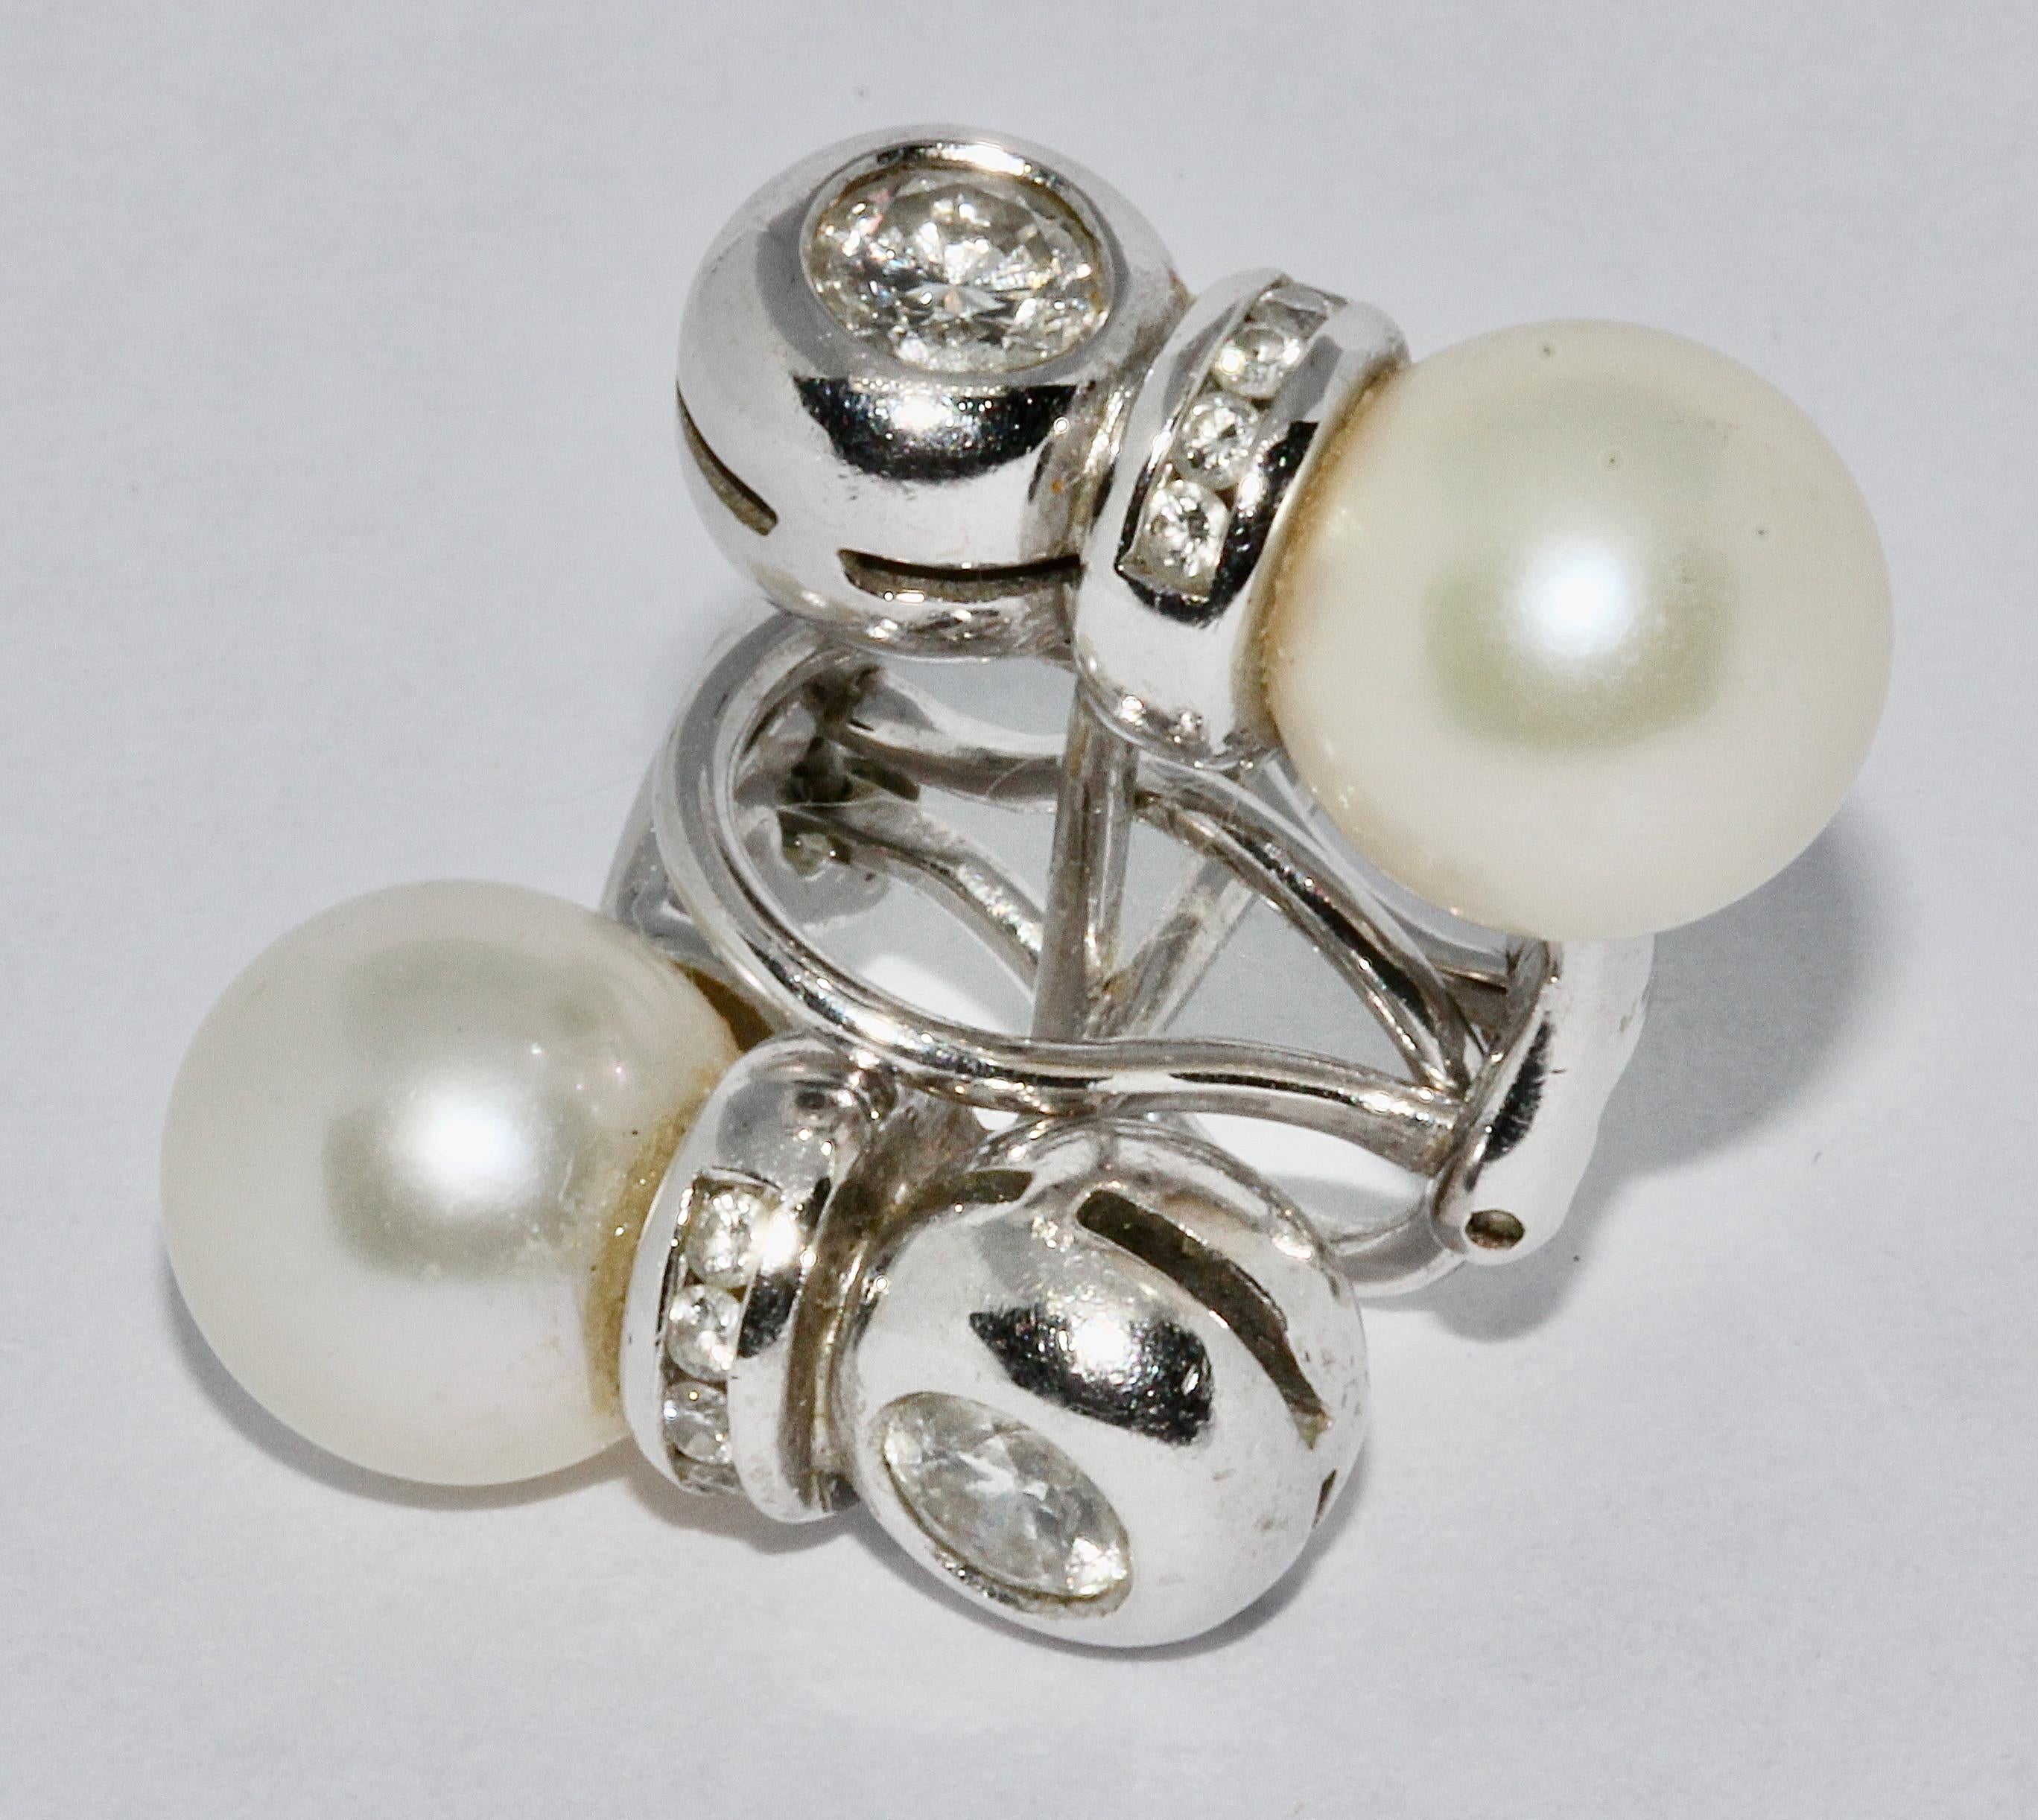 Perlen- und Diamanten-Ohrstecker, Weißgold.

Jeder Ohrring ist mit einem Brillant-Solitär von ca. 0,3 Karat und 5 kleinen Diamanten von sehr guter Qualität besetzt.

Mit Echtheitszertifikat.